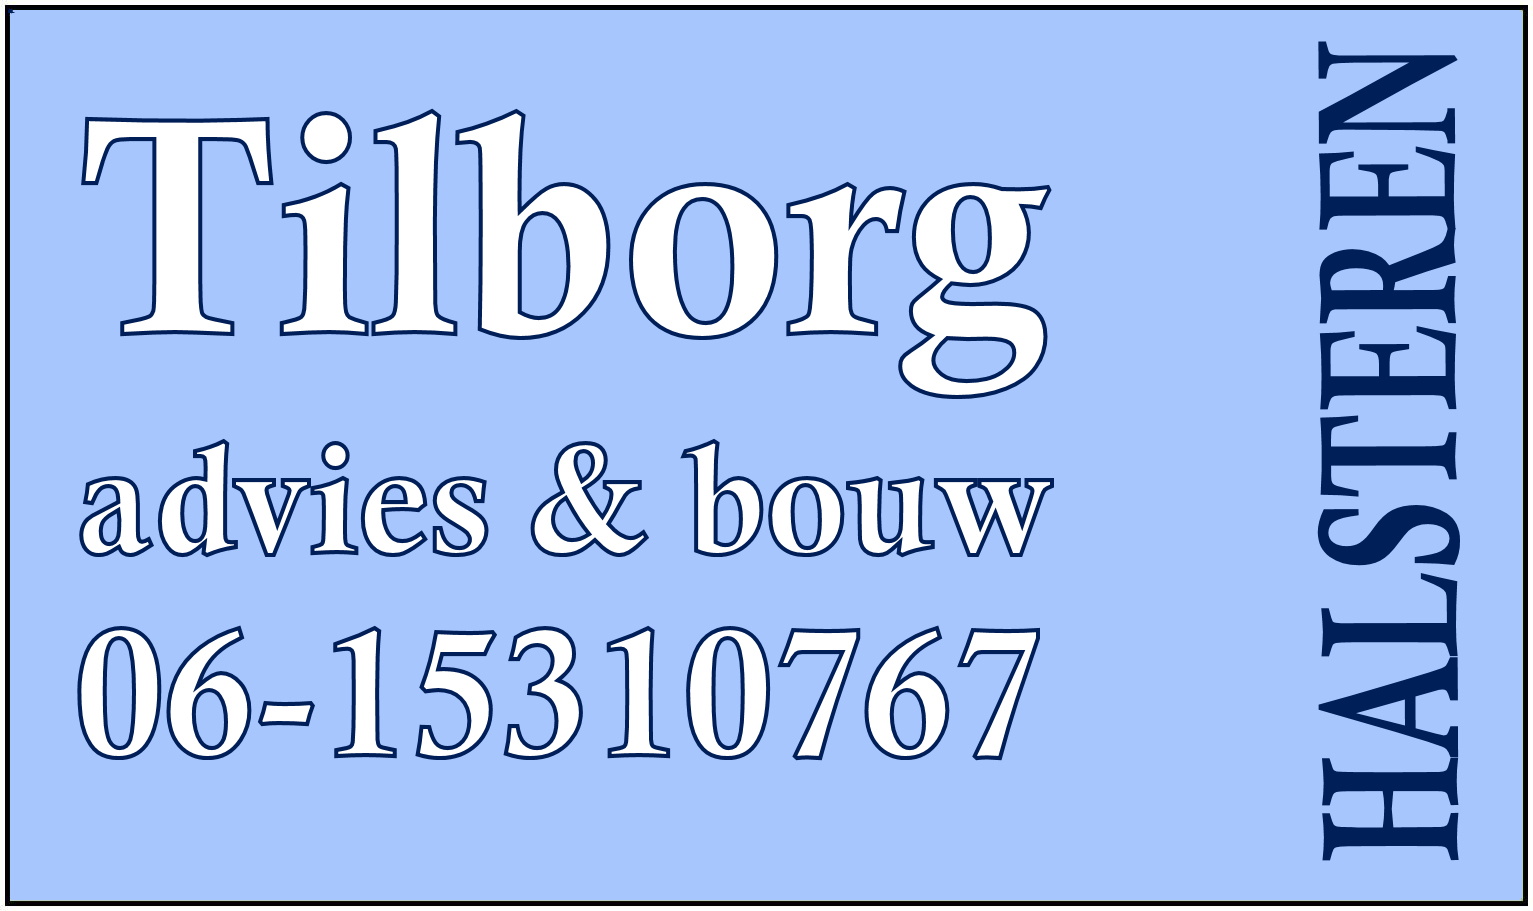 Sponsor 04 – Van Tilborg